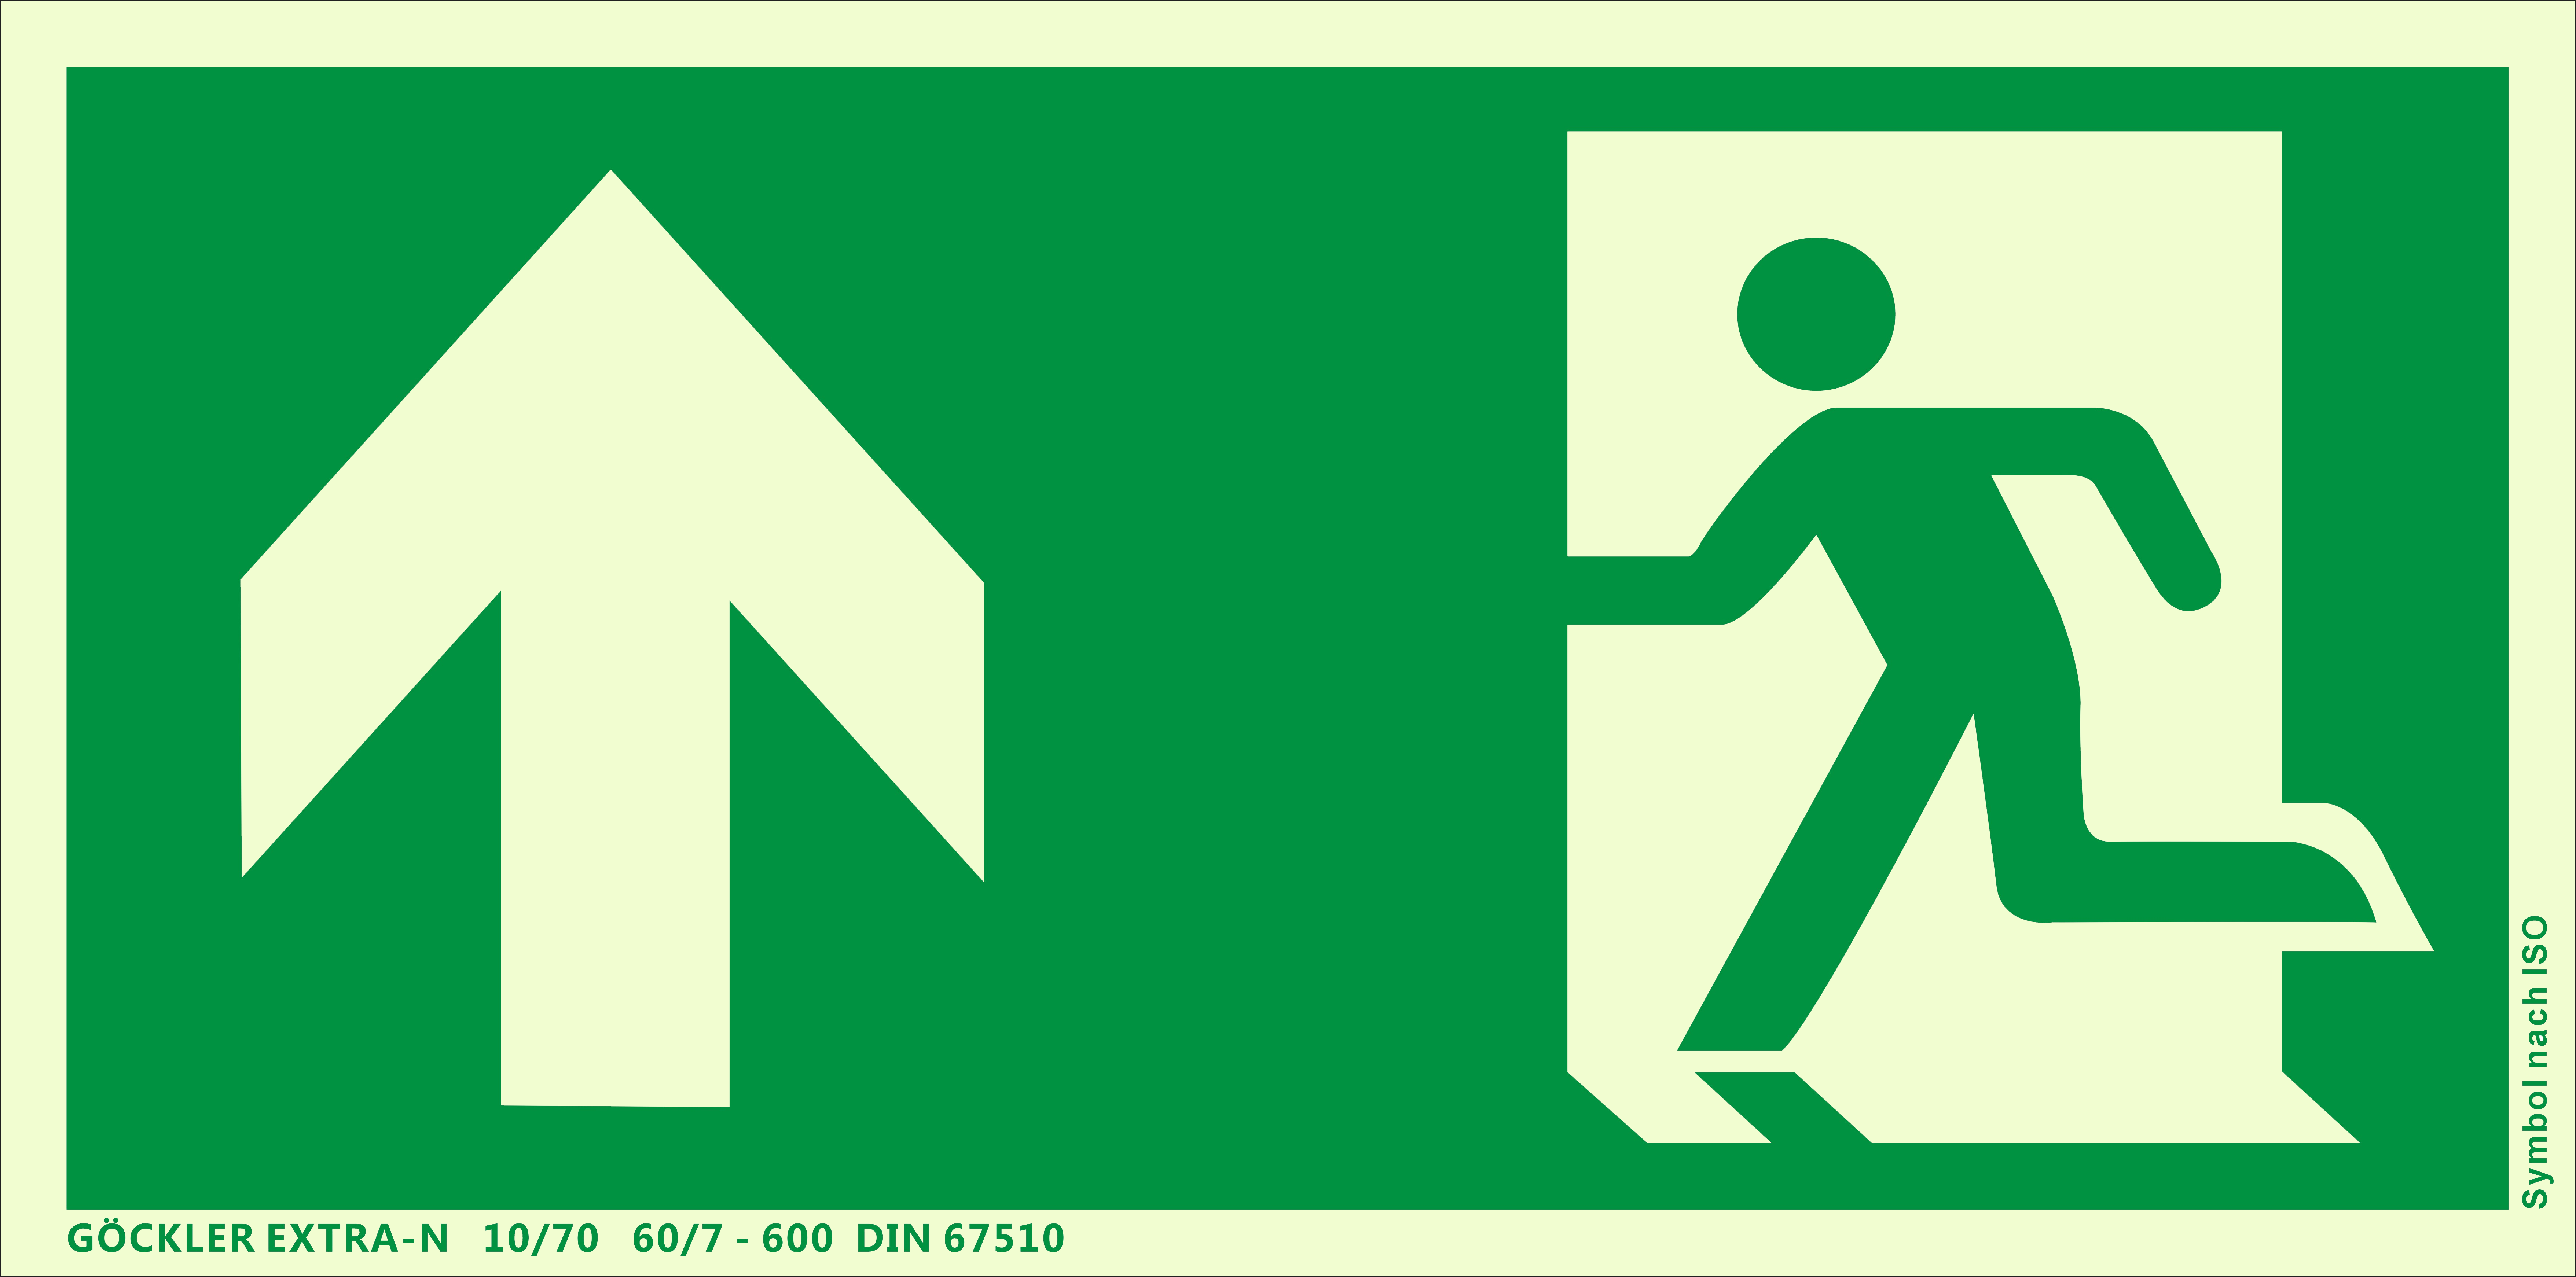 Rettungsweg Notausgang oben Symbol-Schild,Gr.: 300 x 150  mm,langnachleuchtende Folie selbstklebend grün,Symbol nach ISO 7010,GÖCKLER  EXTRA-N 10/70 60/7 - 600 DIN 67510-75092